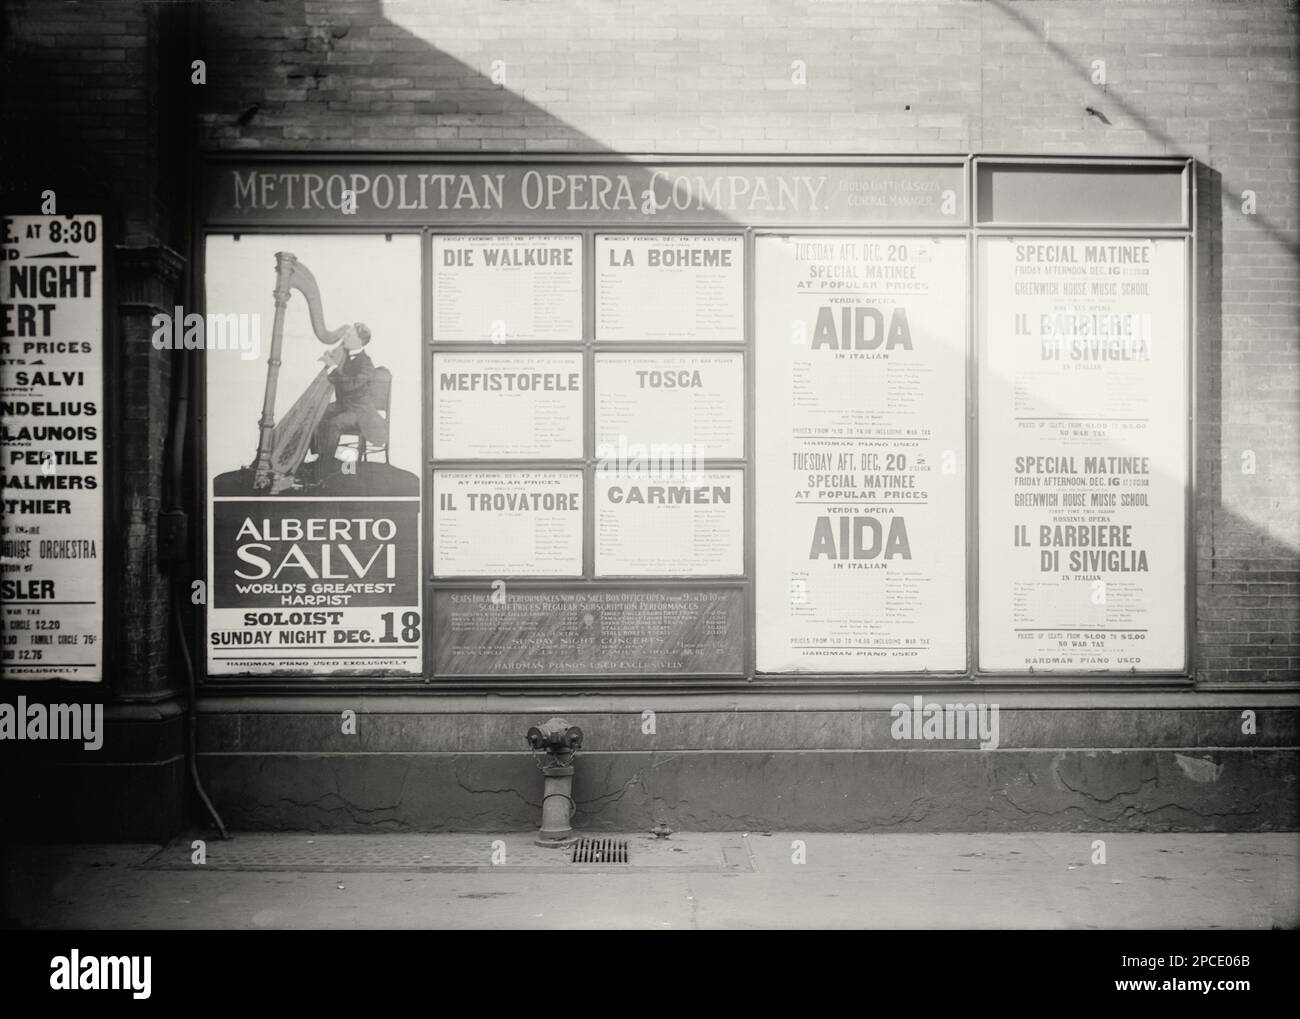 1914 Ca , dezember , New York , USA : der italienische Harfenvirtuose ALBERTO SALVI ( 1893 - 1983 ) , der als " der größte Harfist der Welt " beschrieben wird, Konzerte Posterwerbung bei DER METROPOLITAN OPERA COMPANY durch den italienischen Manager GIULIO GATTI CASAZZA . Gleichzeitig stellen sich die annonces of Show der italienischen Oper baritono AURELIANO PERTILE , FRANCESCA PERALTA, GIUSEPPE DE LUCA , Alice Gentle , Queena Mario , GIOVANNI MARTINELLI , BENIAMINO GIGLI und GERALDINE FARRAR in CARMEN von Bizet , IL TROVATORE von Giuseppe Verdi , IL BARBIERE DI SIVIGLIA von Rossini, AIDA von Giuseppe Verdi, LA BOHEME von Giacomo Stockfoto